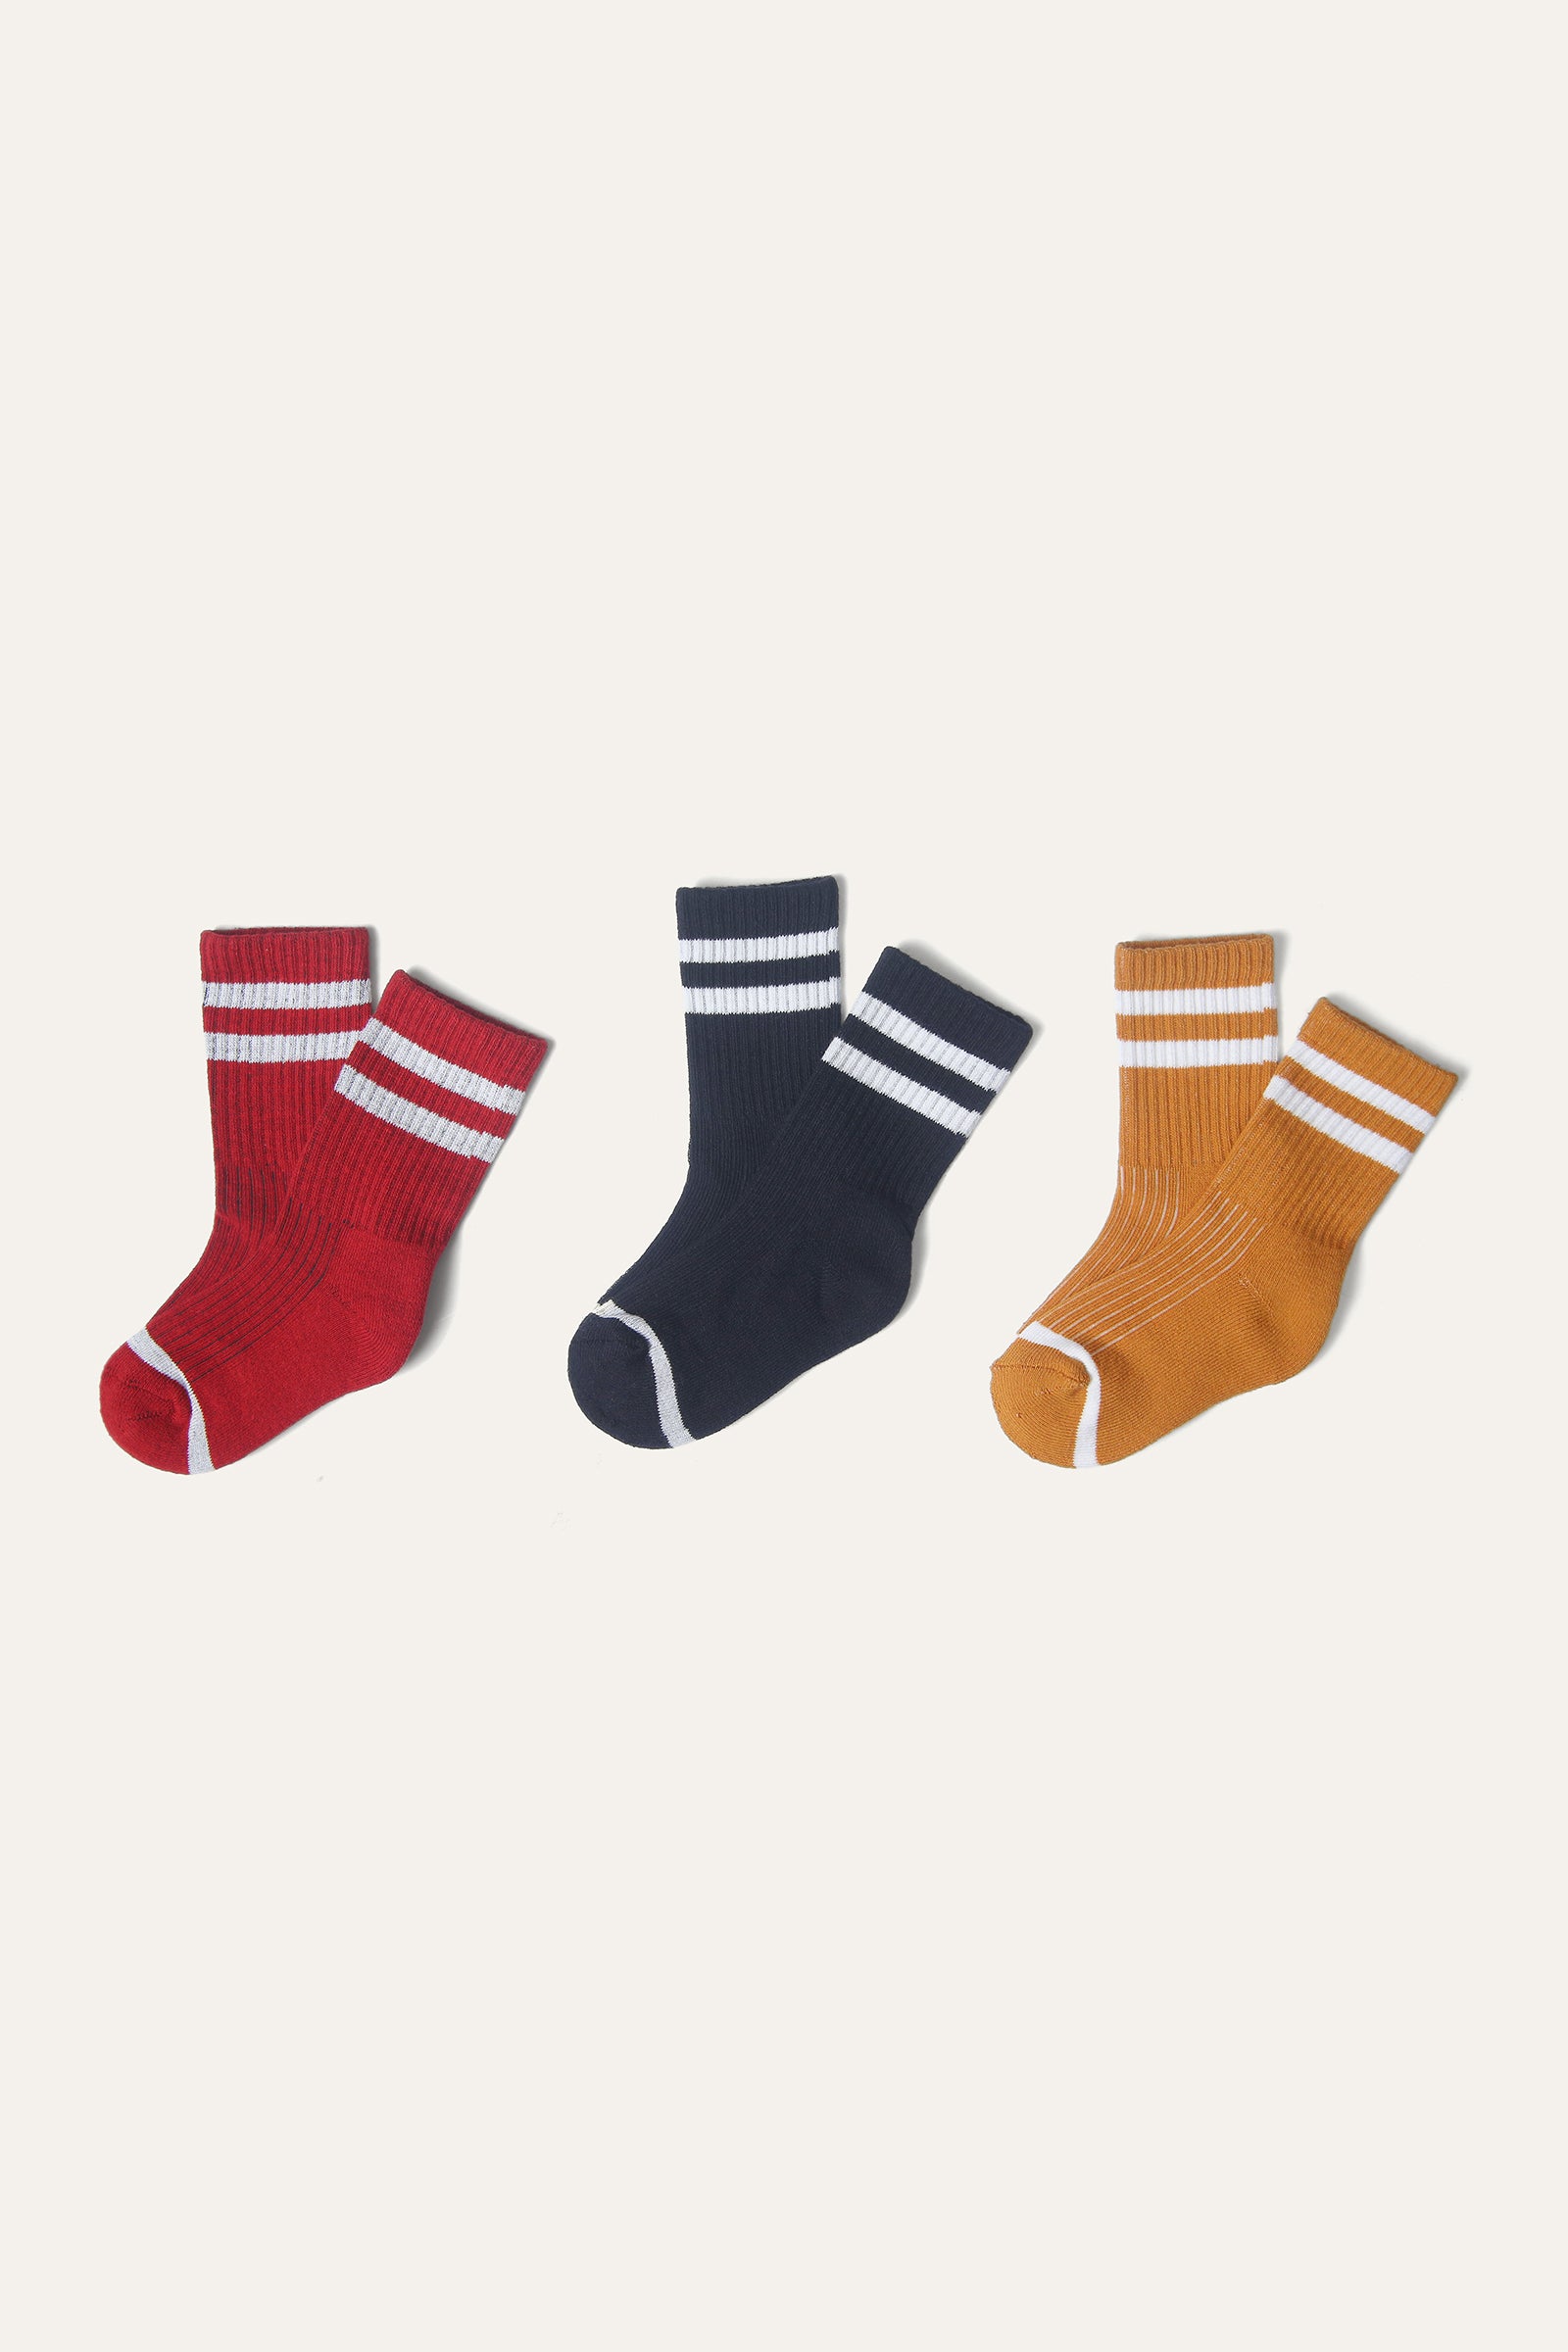 Socks Pack (SB-161)